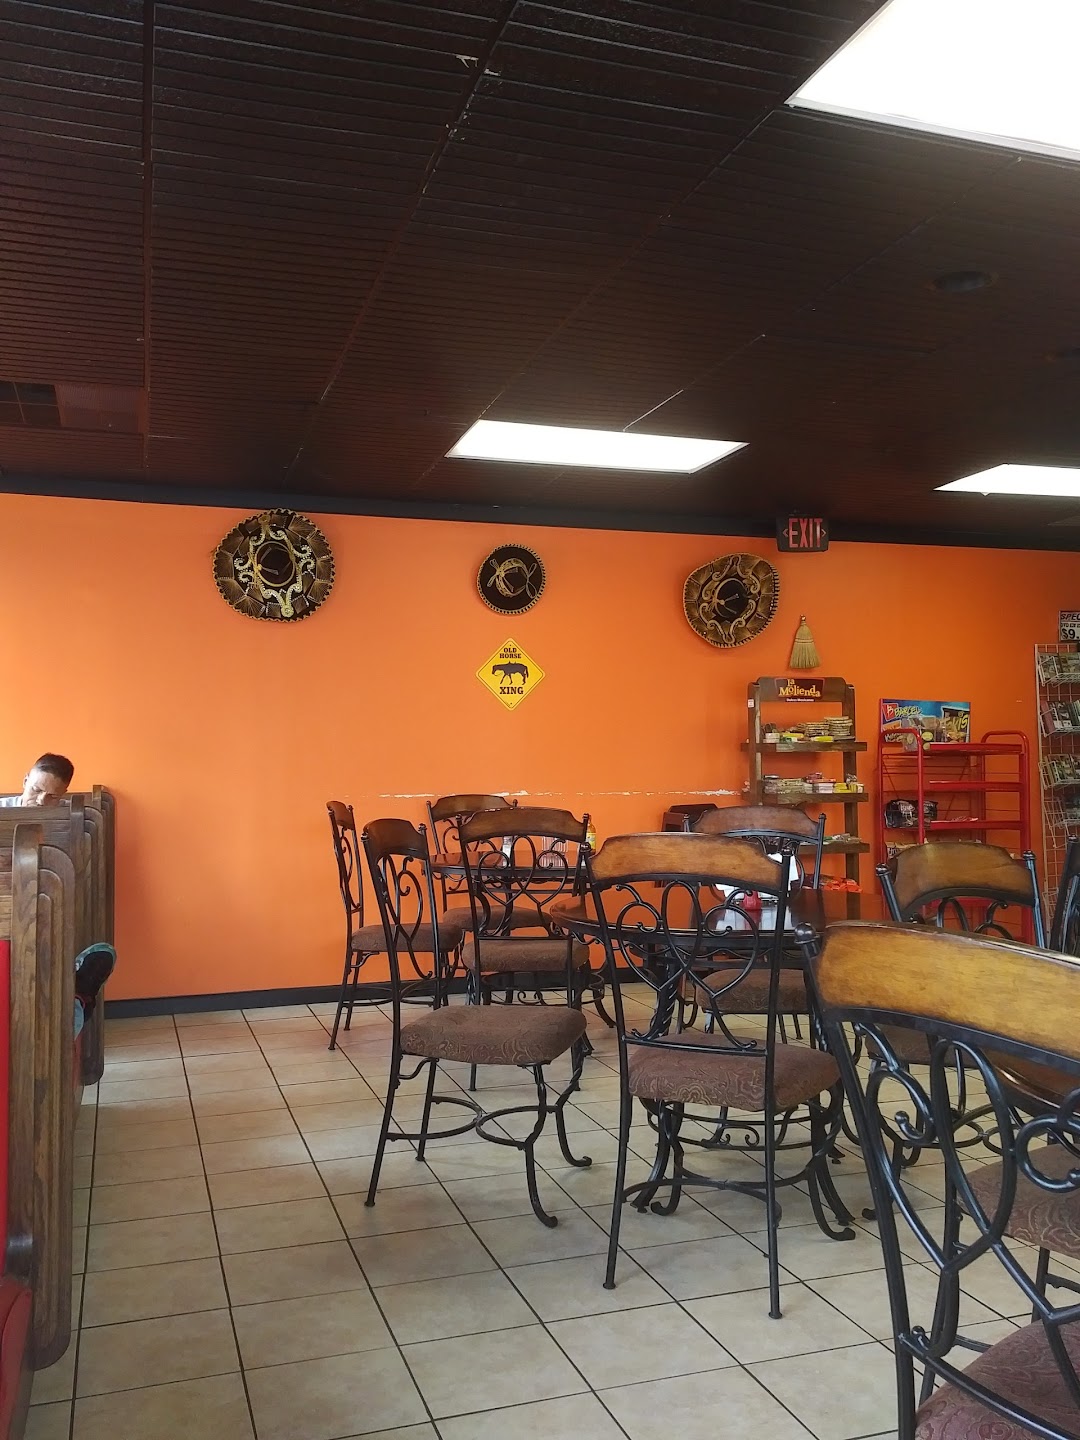 El Charro Mexican Restaurant